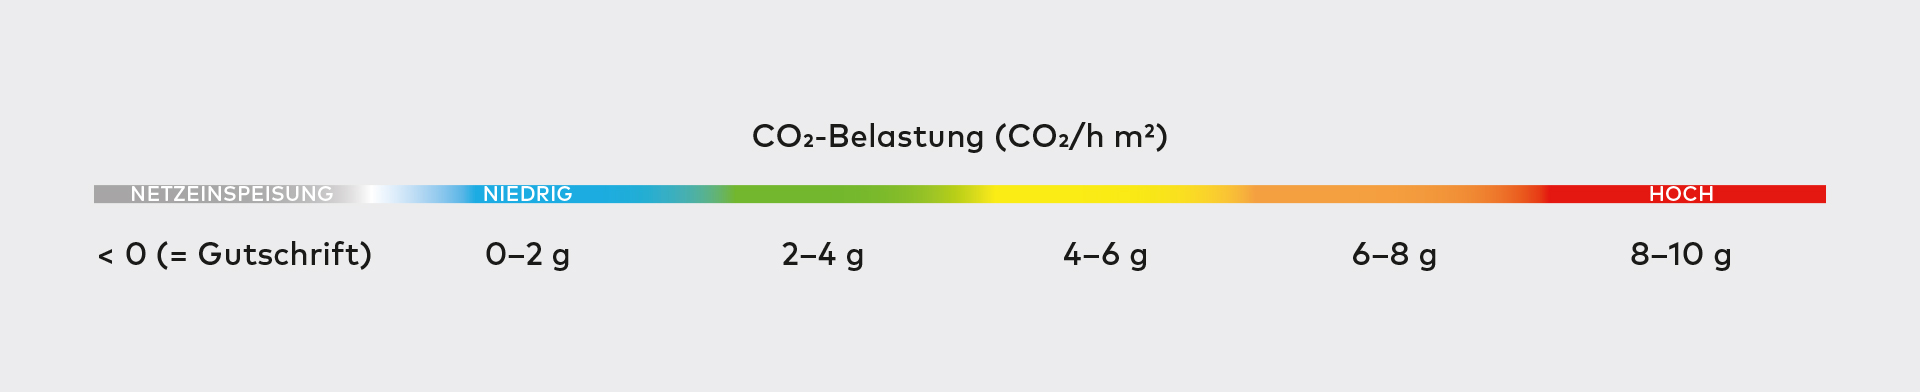 Dieses Diagramm zeigt mithilfe verschiedener Farben, wie hoch die CO₂-Belastung des Gebäudes ist. Mit ihr lassen sich die Teppichdiagramme einordnen.